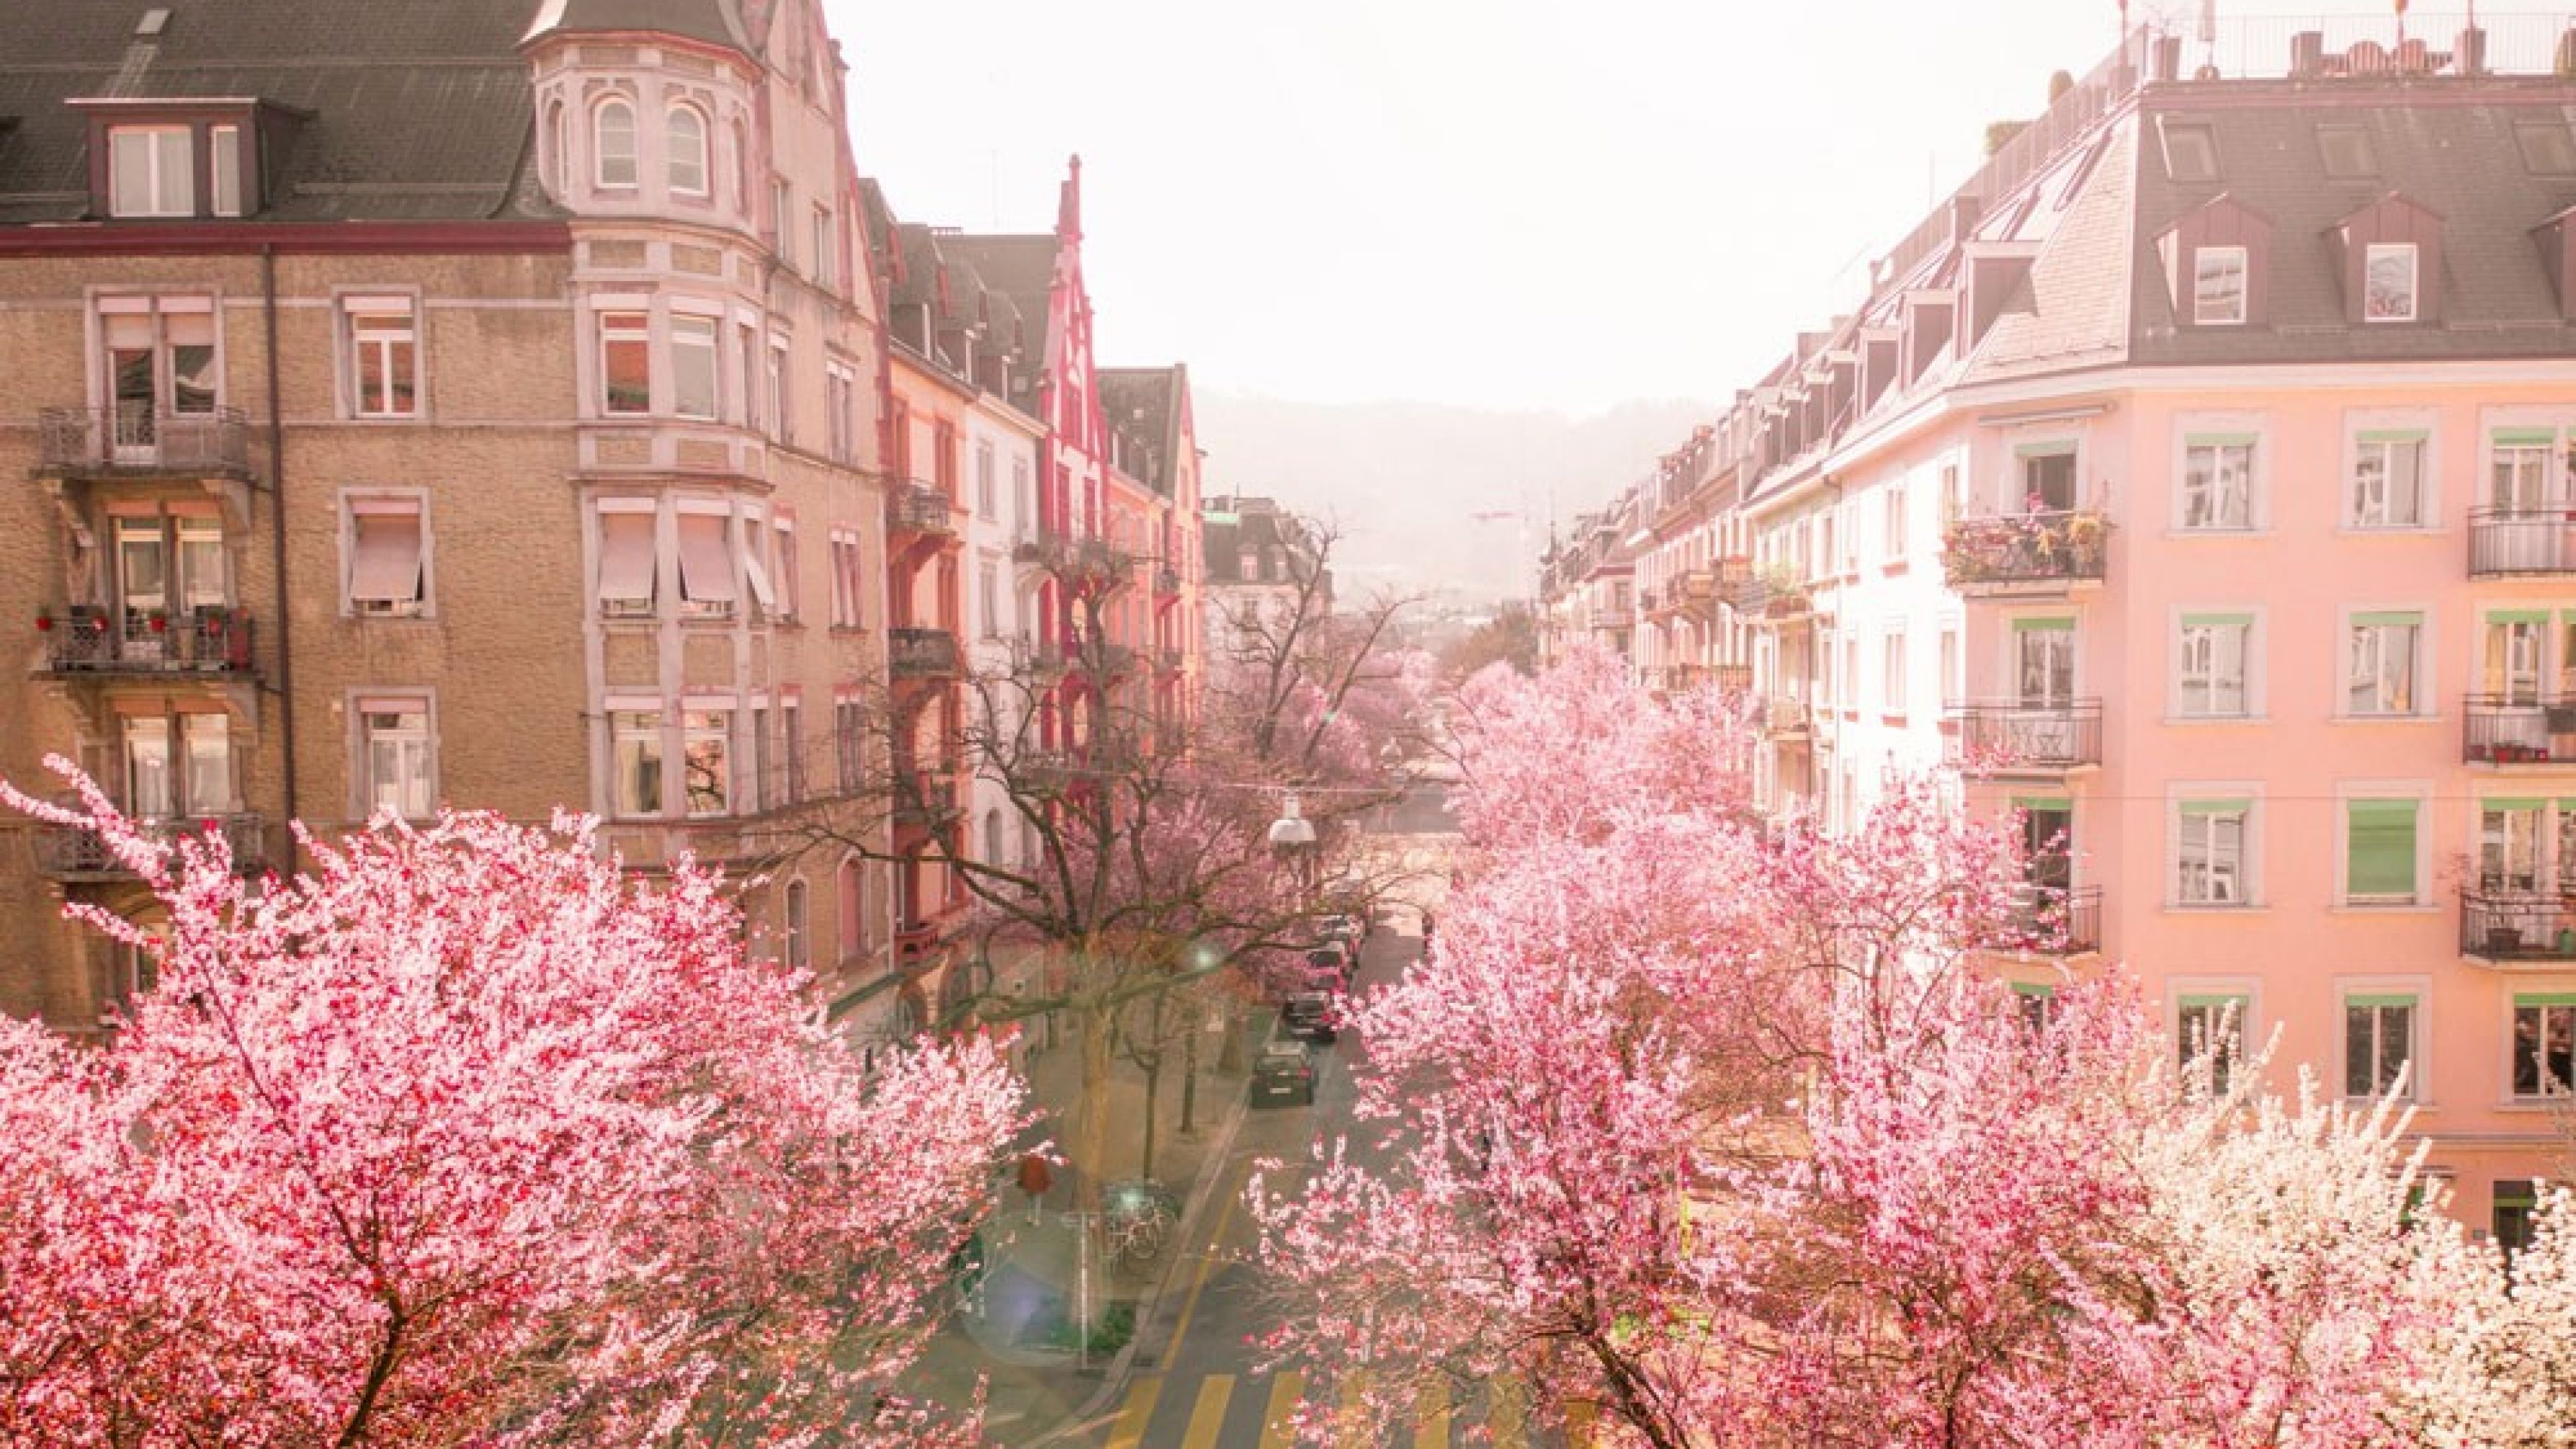 Häuserblock mit Cherry Blossom im Kreis 3 in Zürich